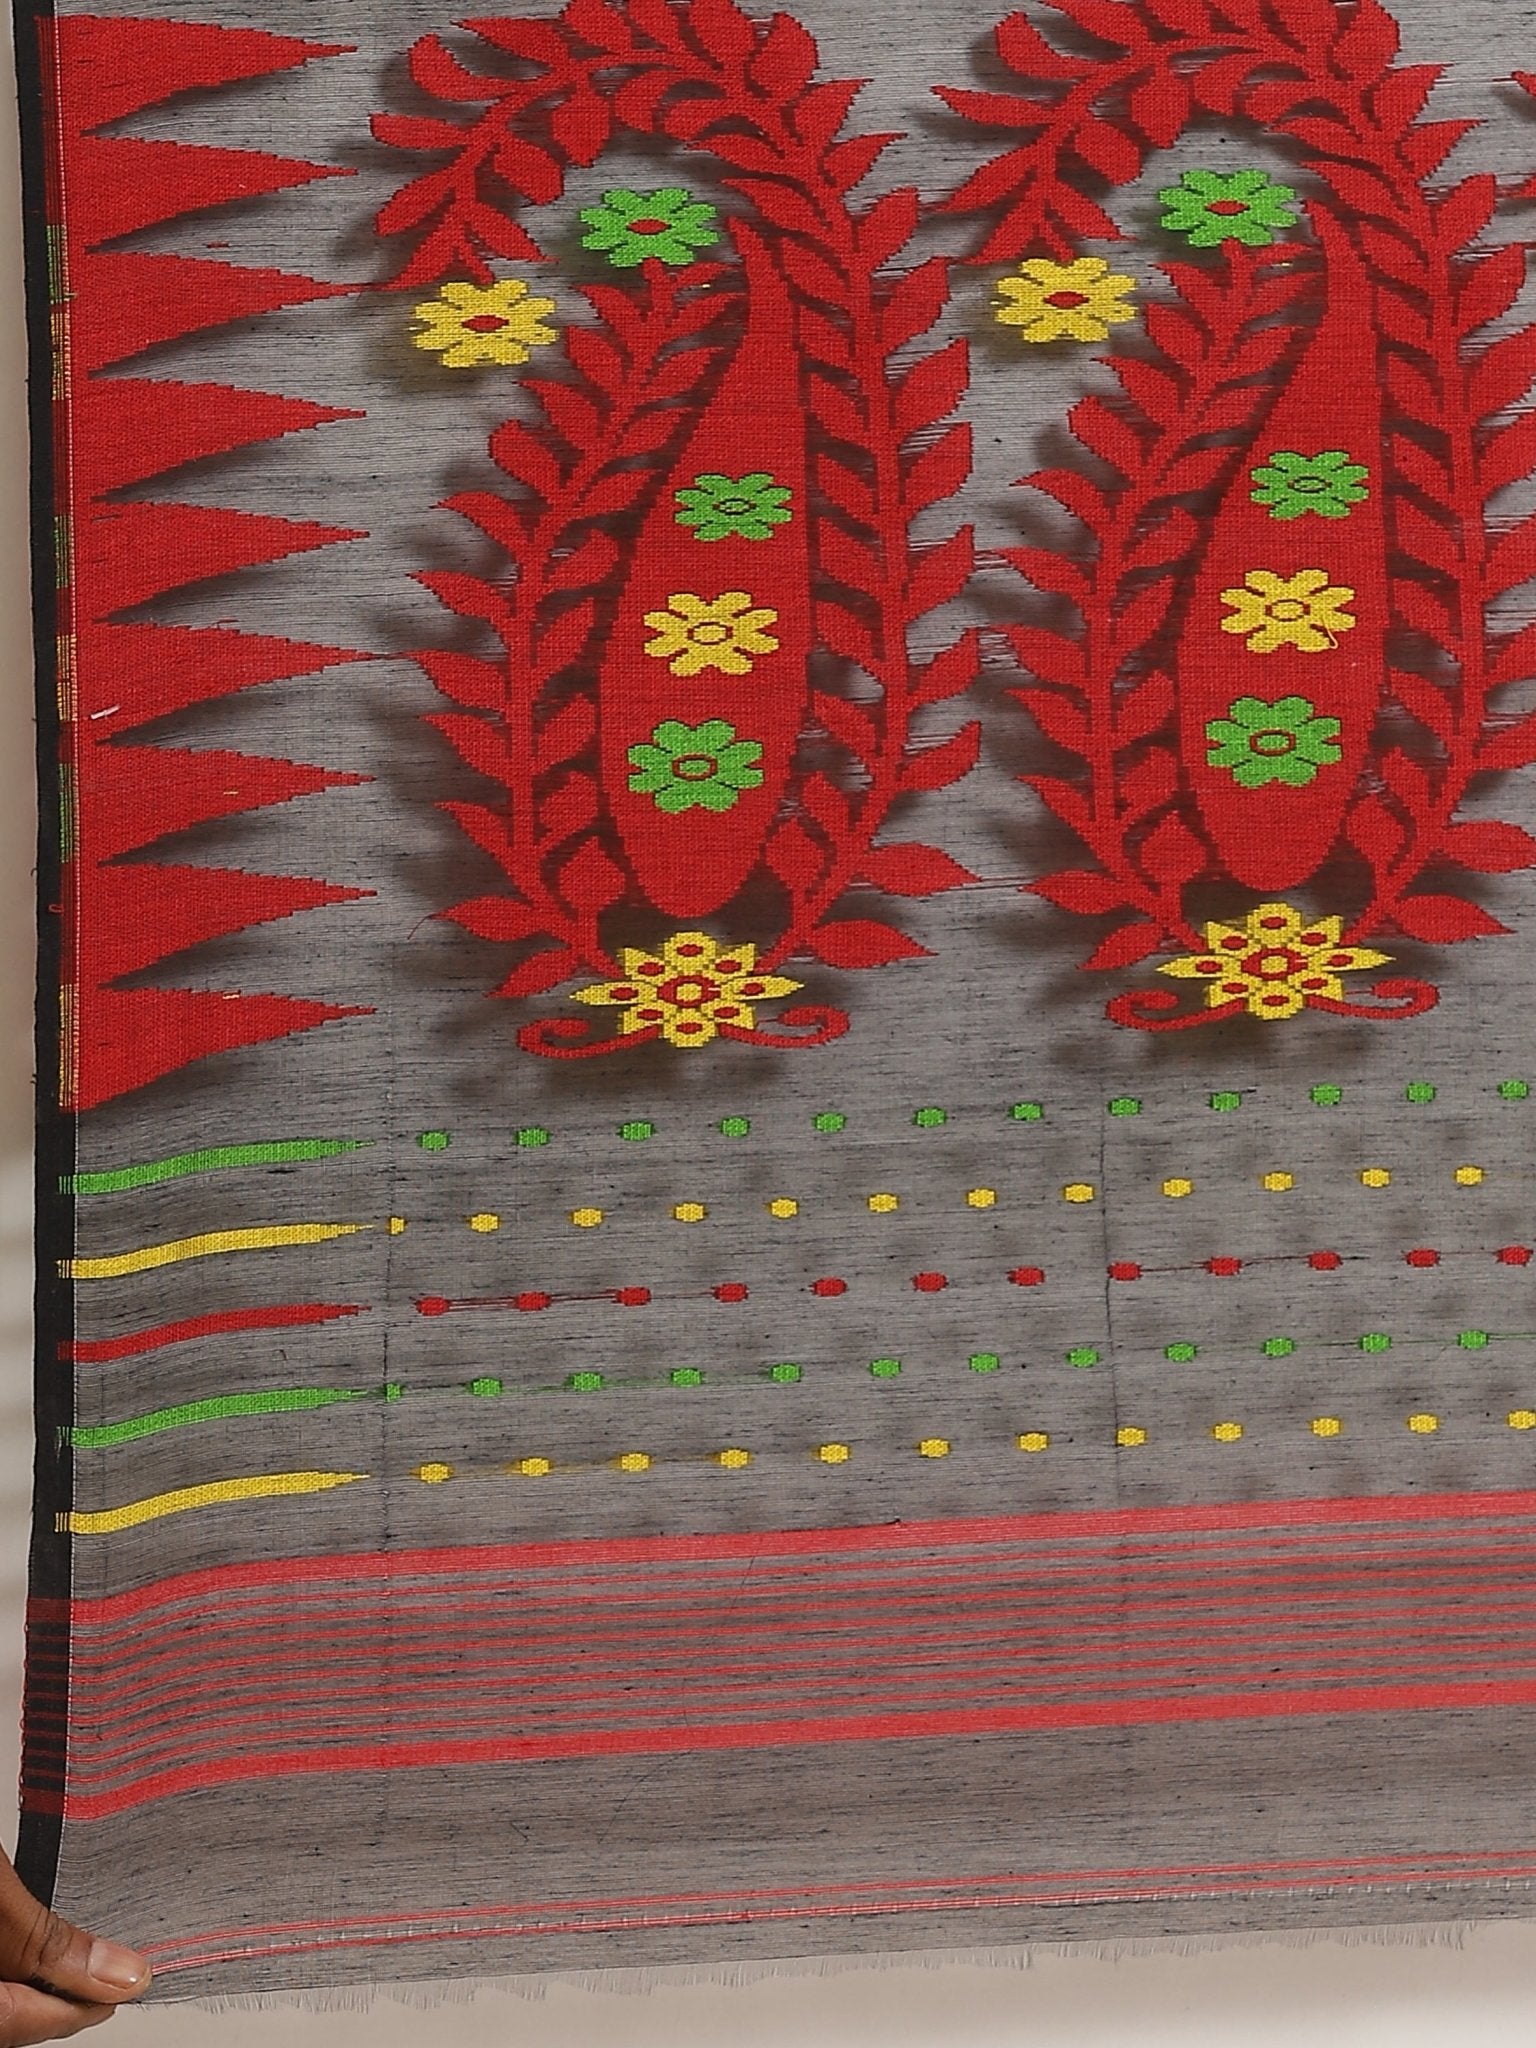 Black and Red, Kalakari India Jamdani Silk Cotton Woven Design Saree without blouse CHBHSA0009 - Kalakari India